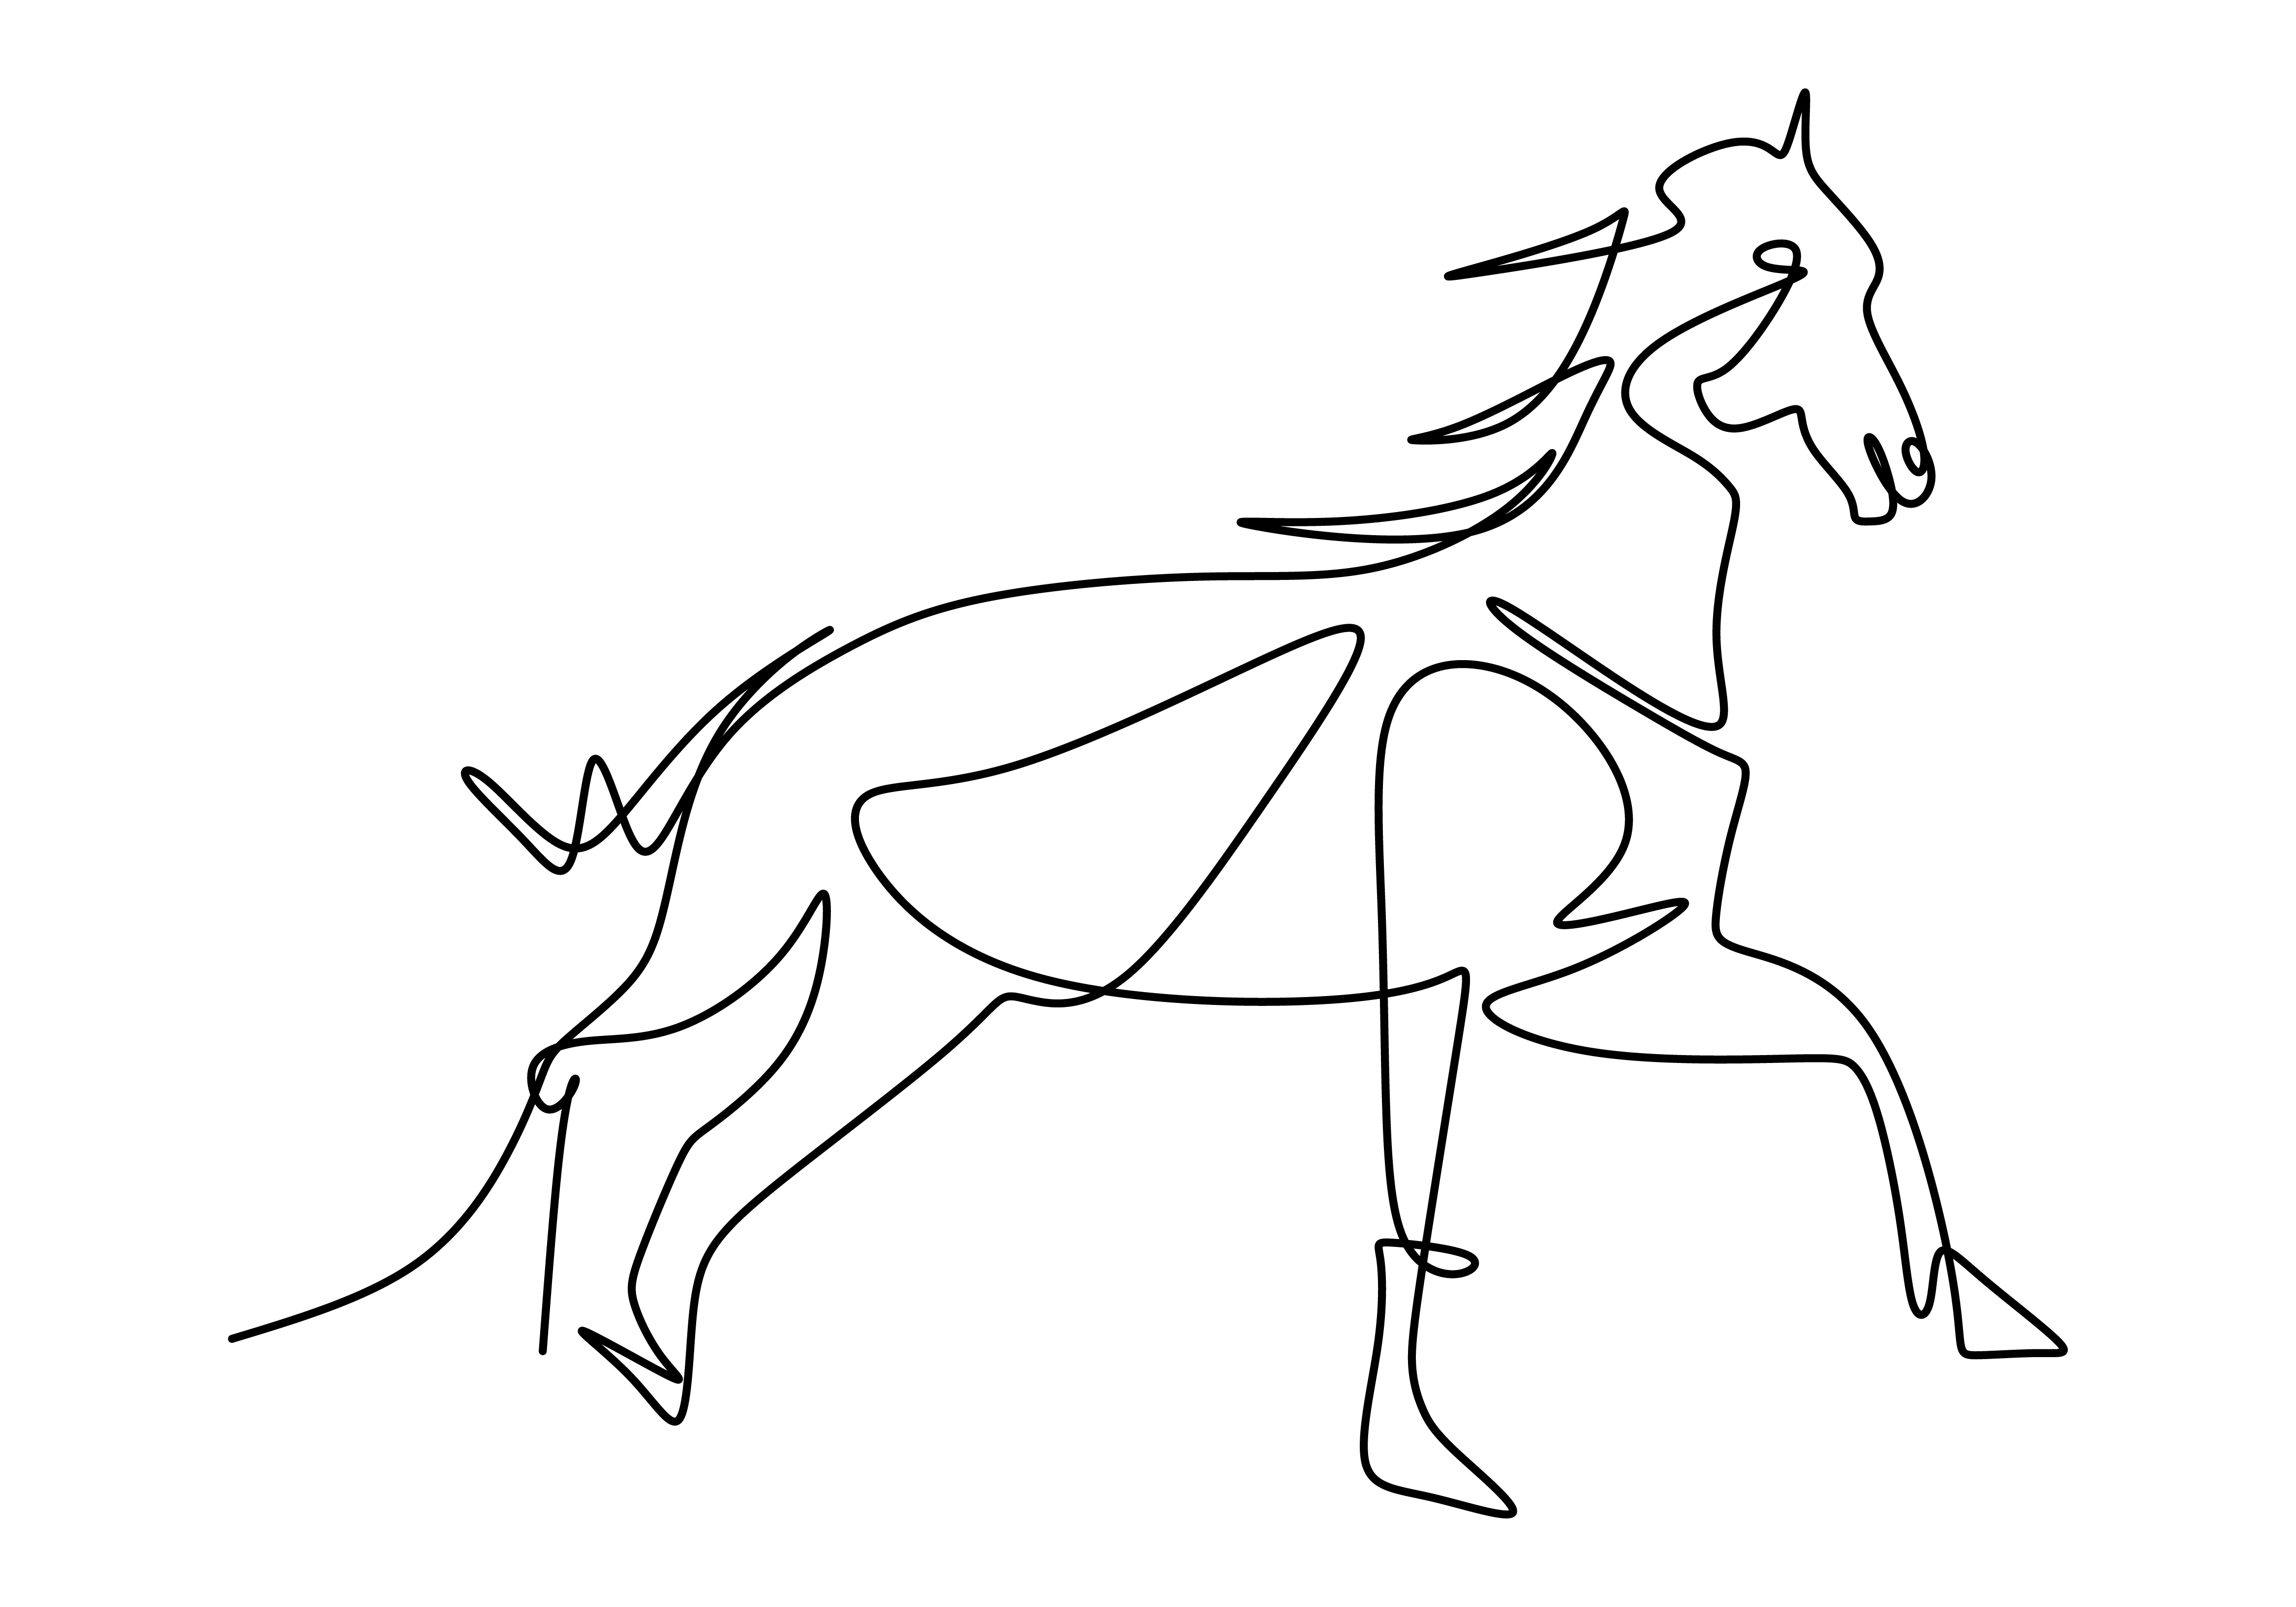 um desenho de linha contínuo do boneco cavalo de madeira clássico